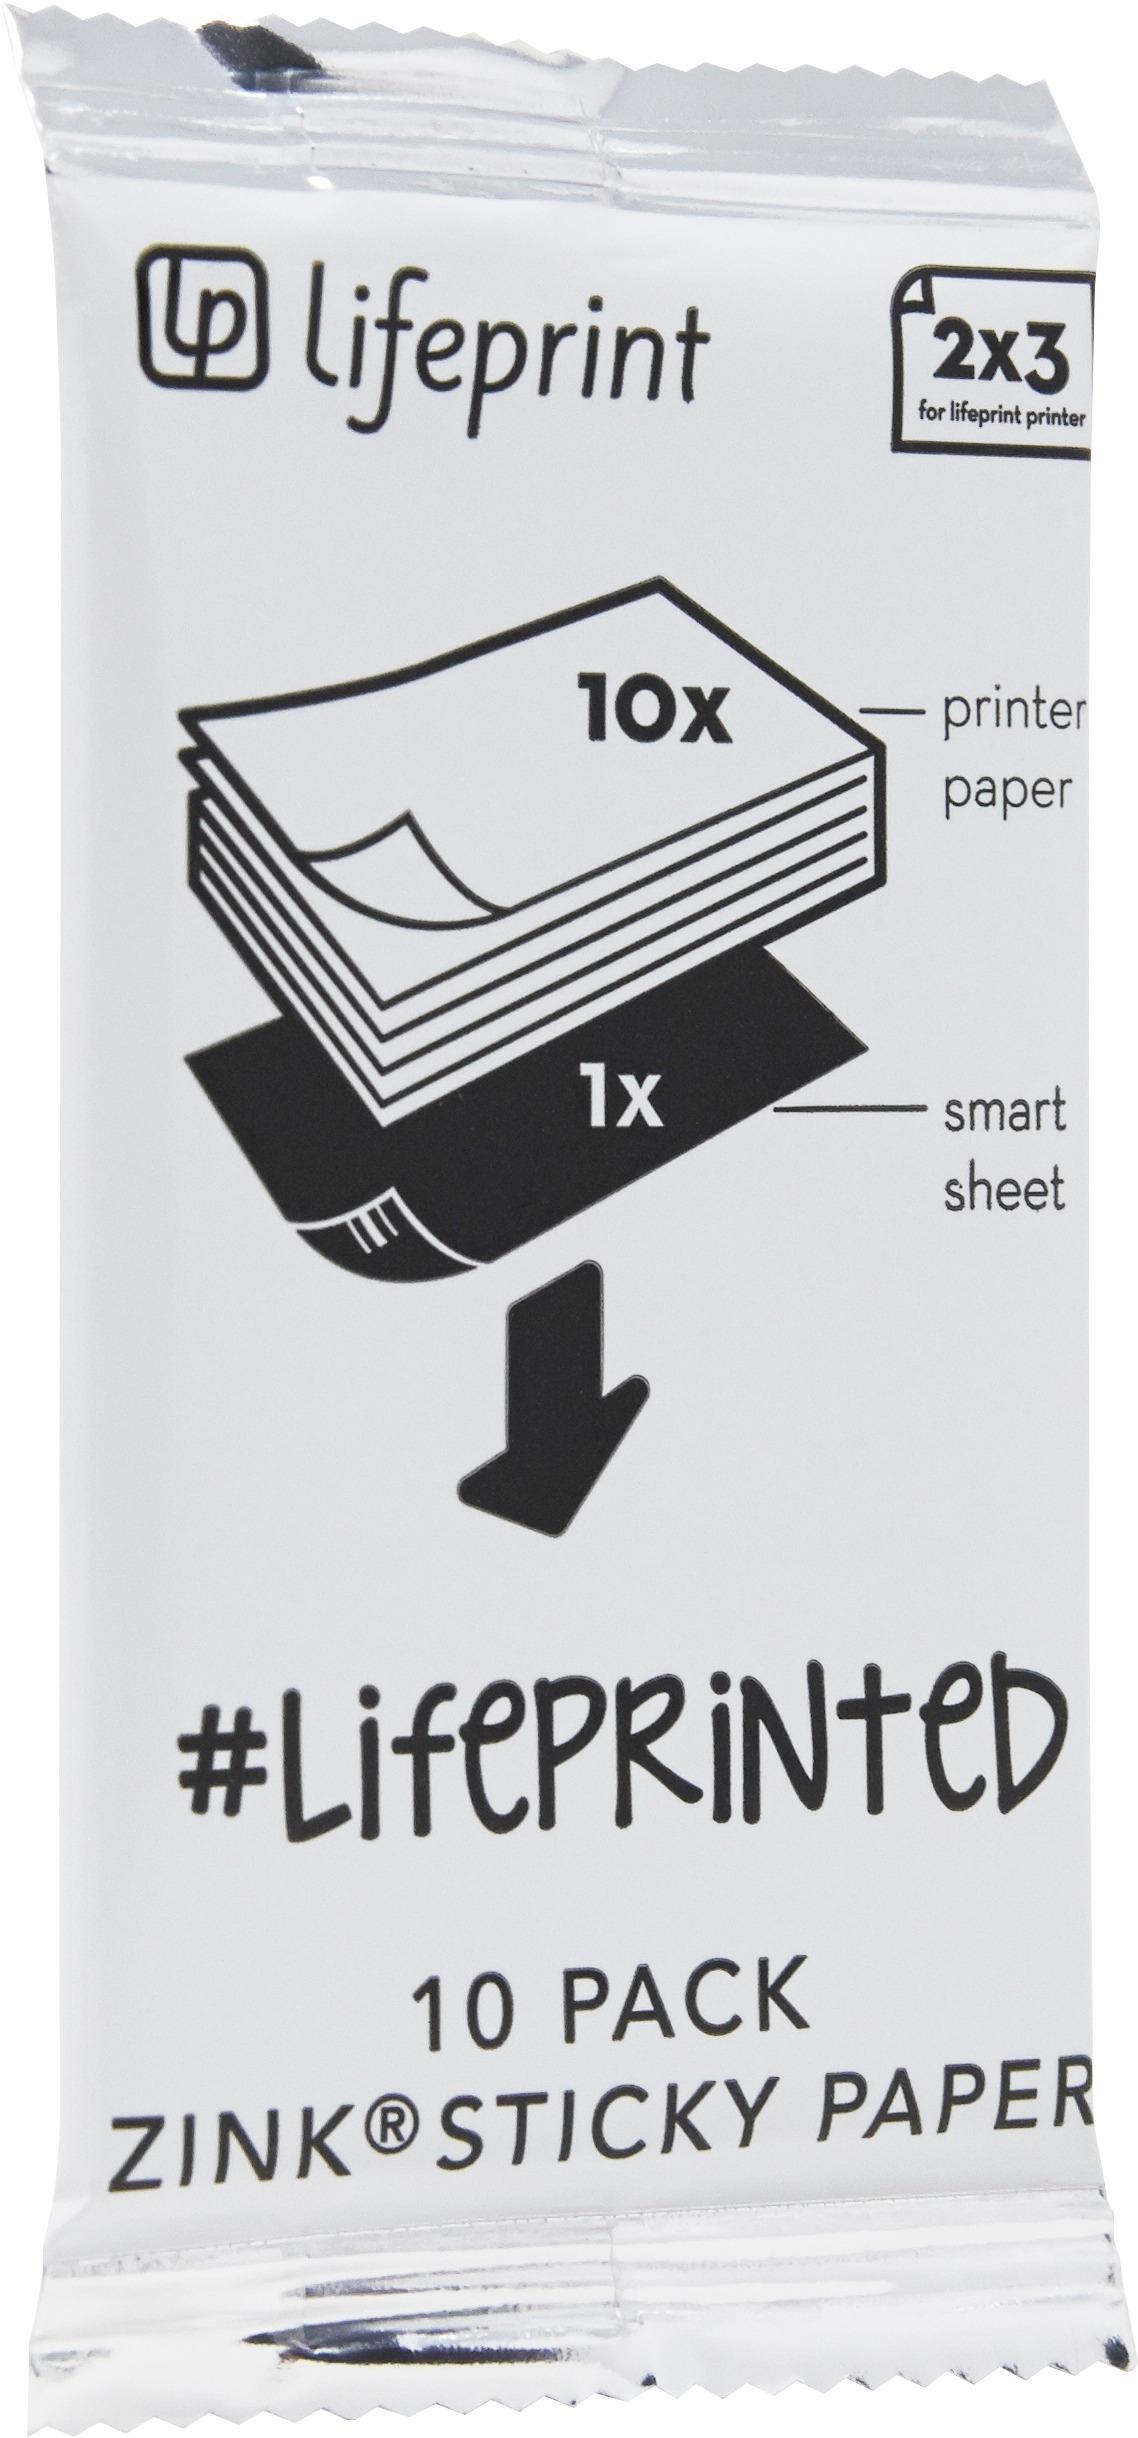 Lifeprint Photo Paper 2x3 - Sticky Back 50 Pack